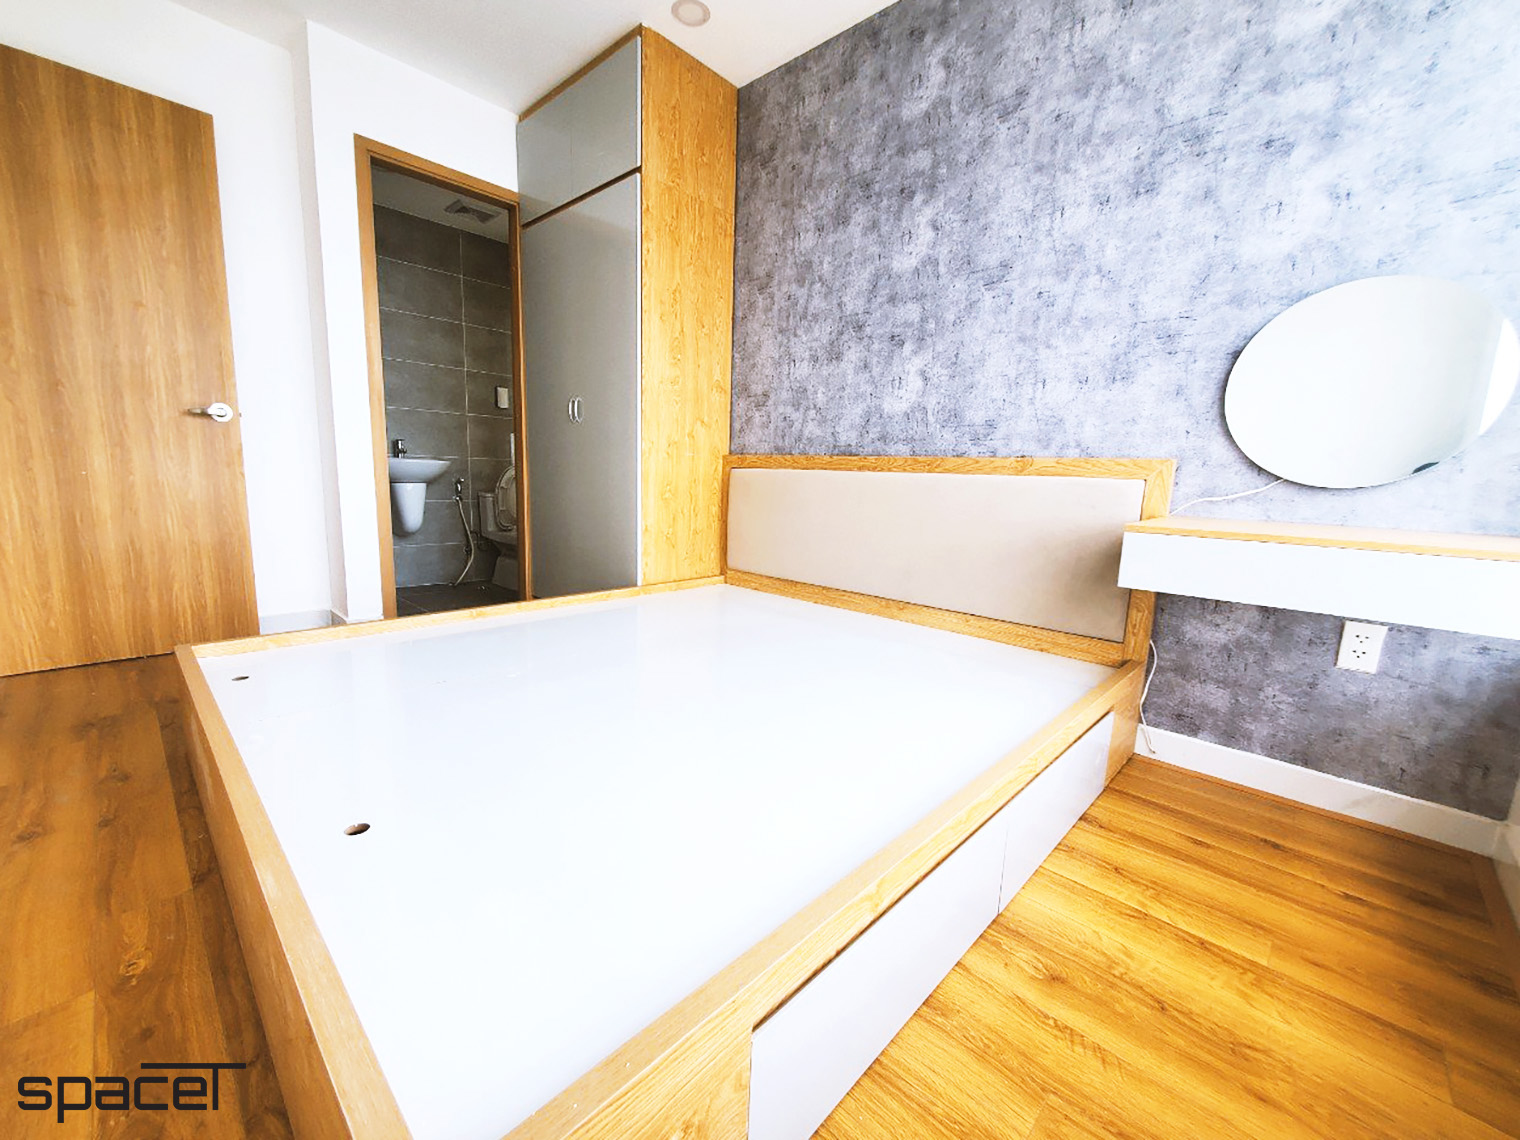 Phòng ngủ Master, phong cách hiện đại Modern, hoàn thiện nội thất, căn hộ Terra Mia Bình Chánh.